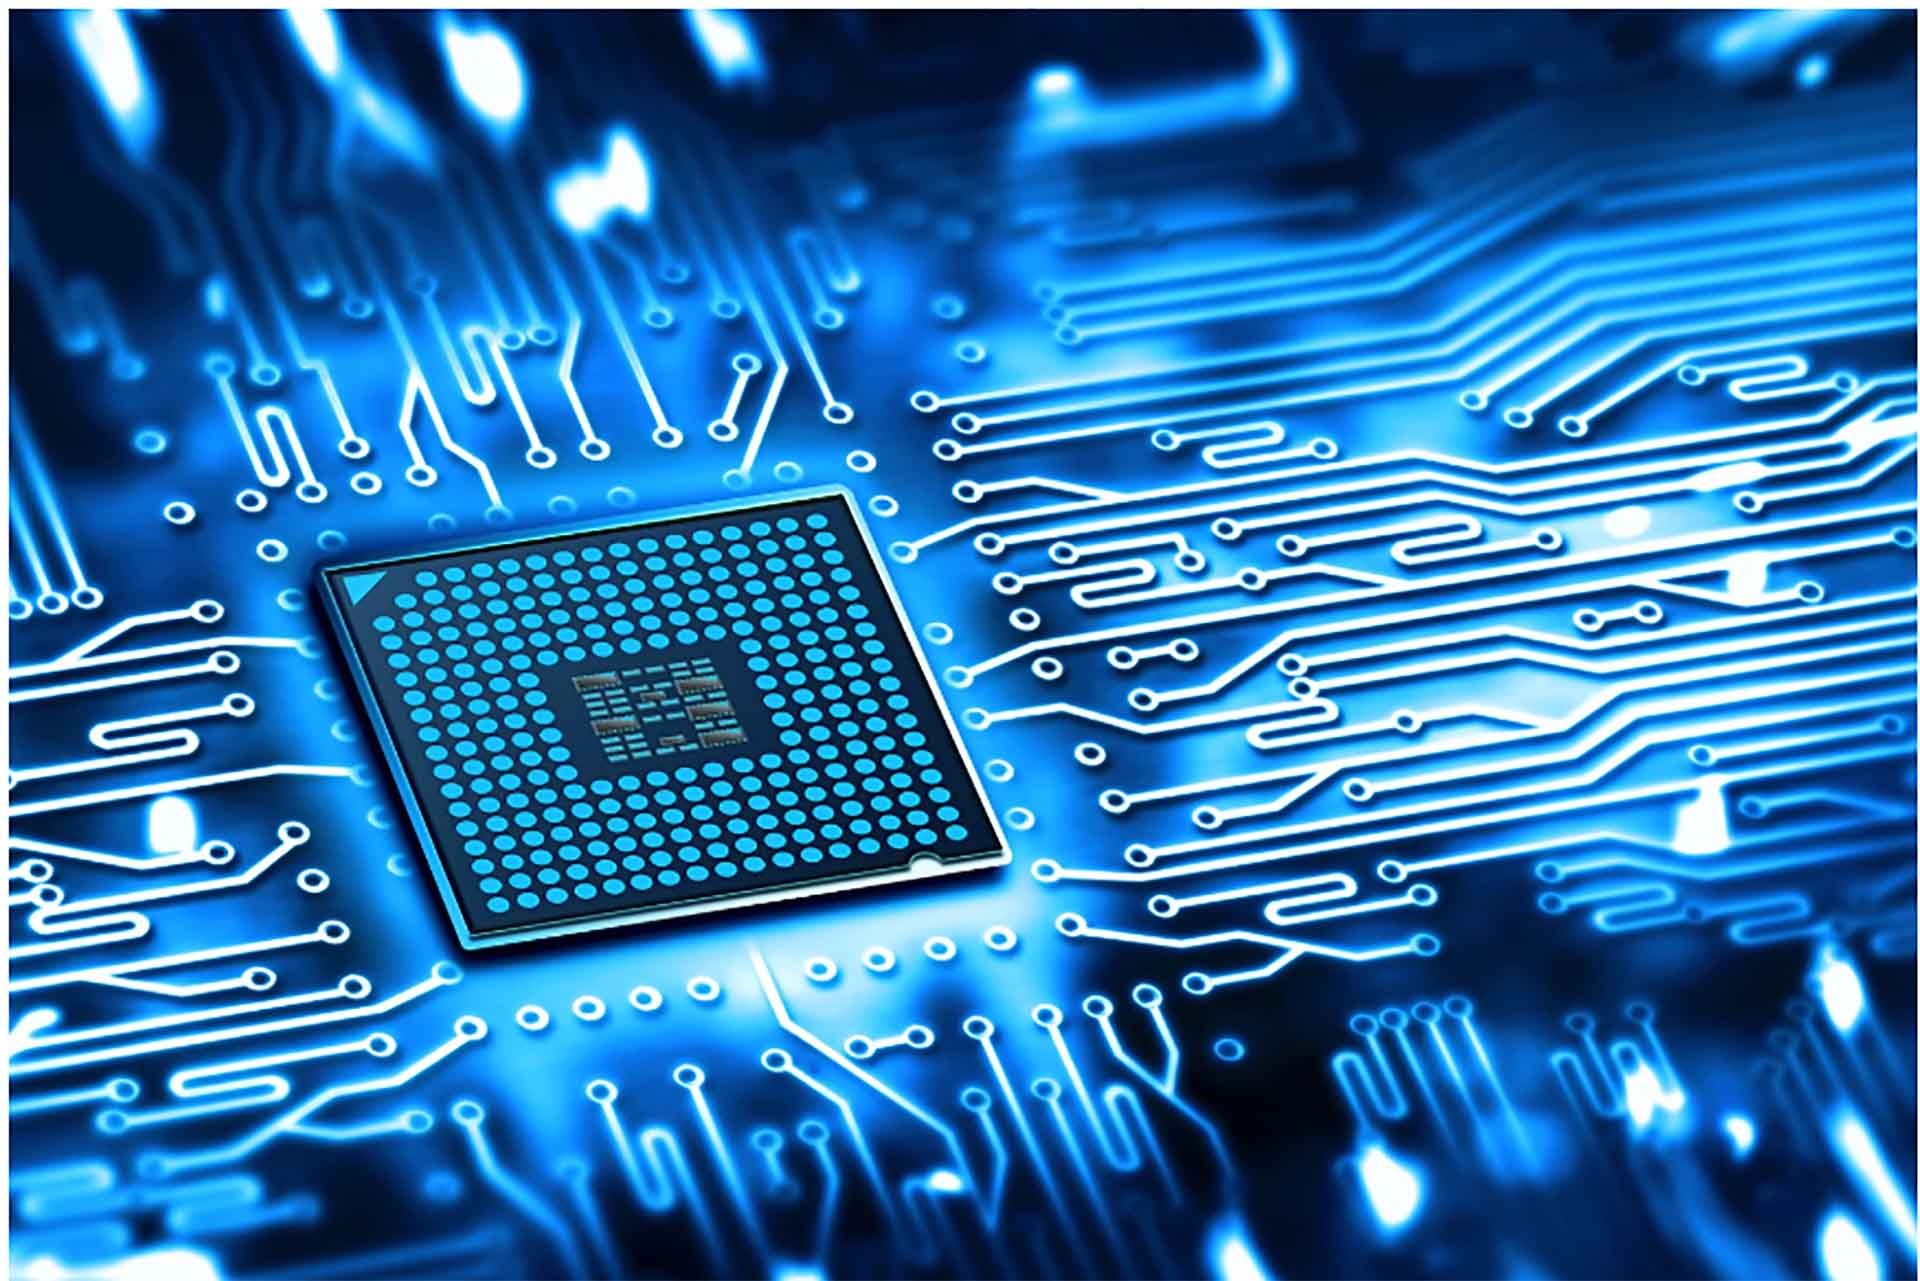 Chip bán dẫn là một trong những phát minh quan trọng nhất của thế kỷ XX